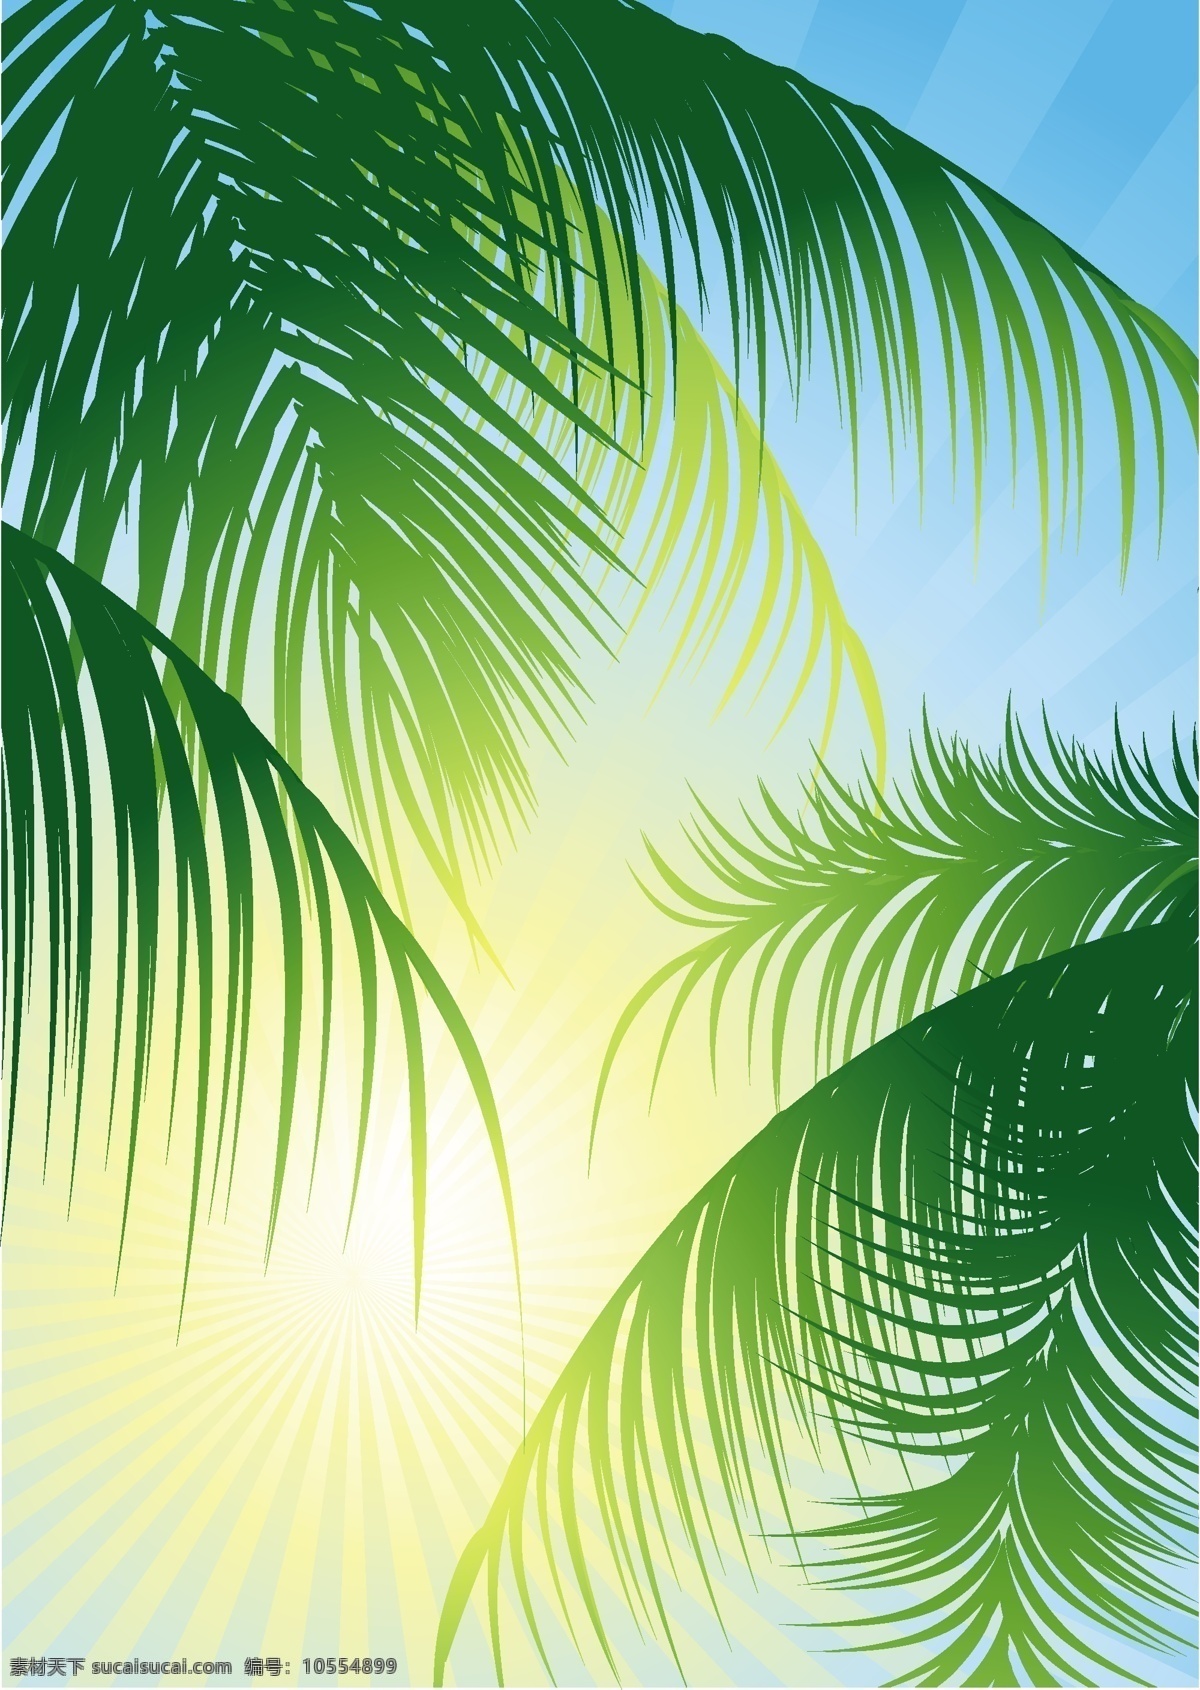 精美 自然风景 矢量 椰林 风光 蓝天 热情 阳光明媚 椰树 矢量图 其他矢量图